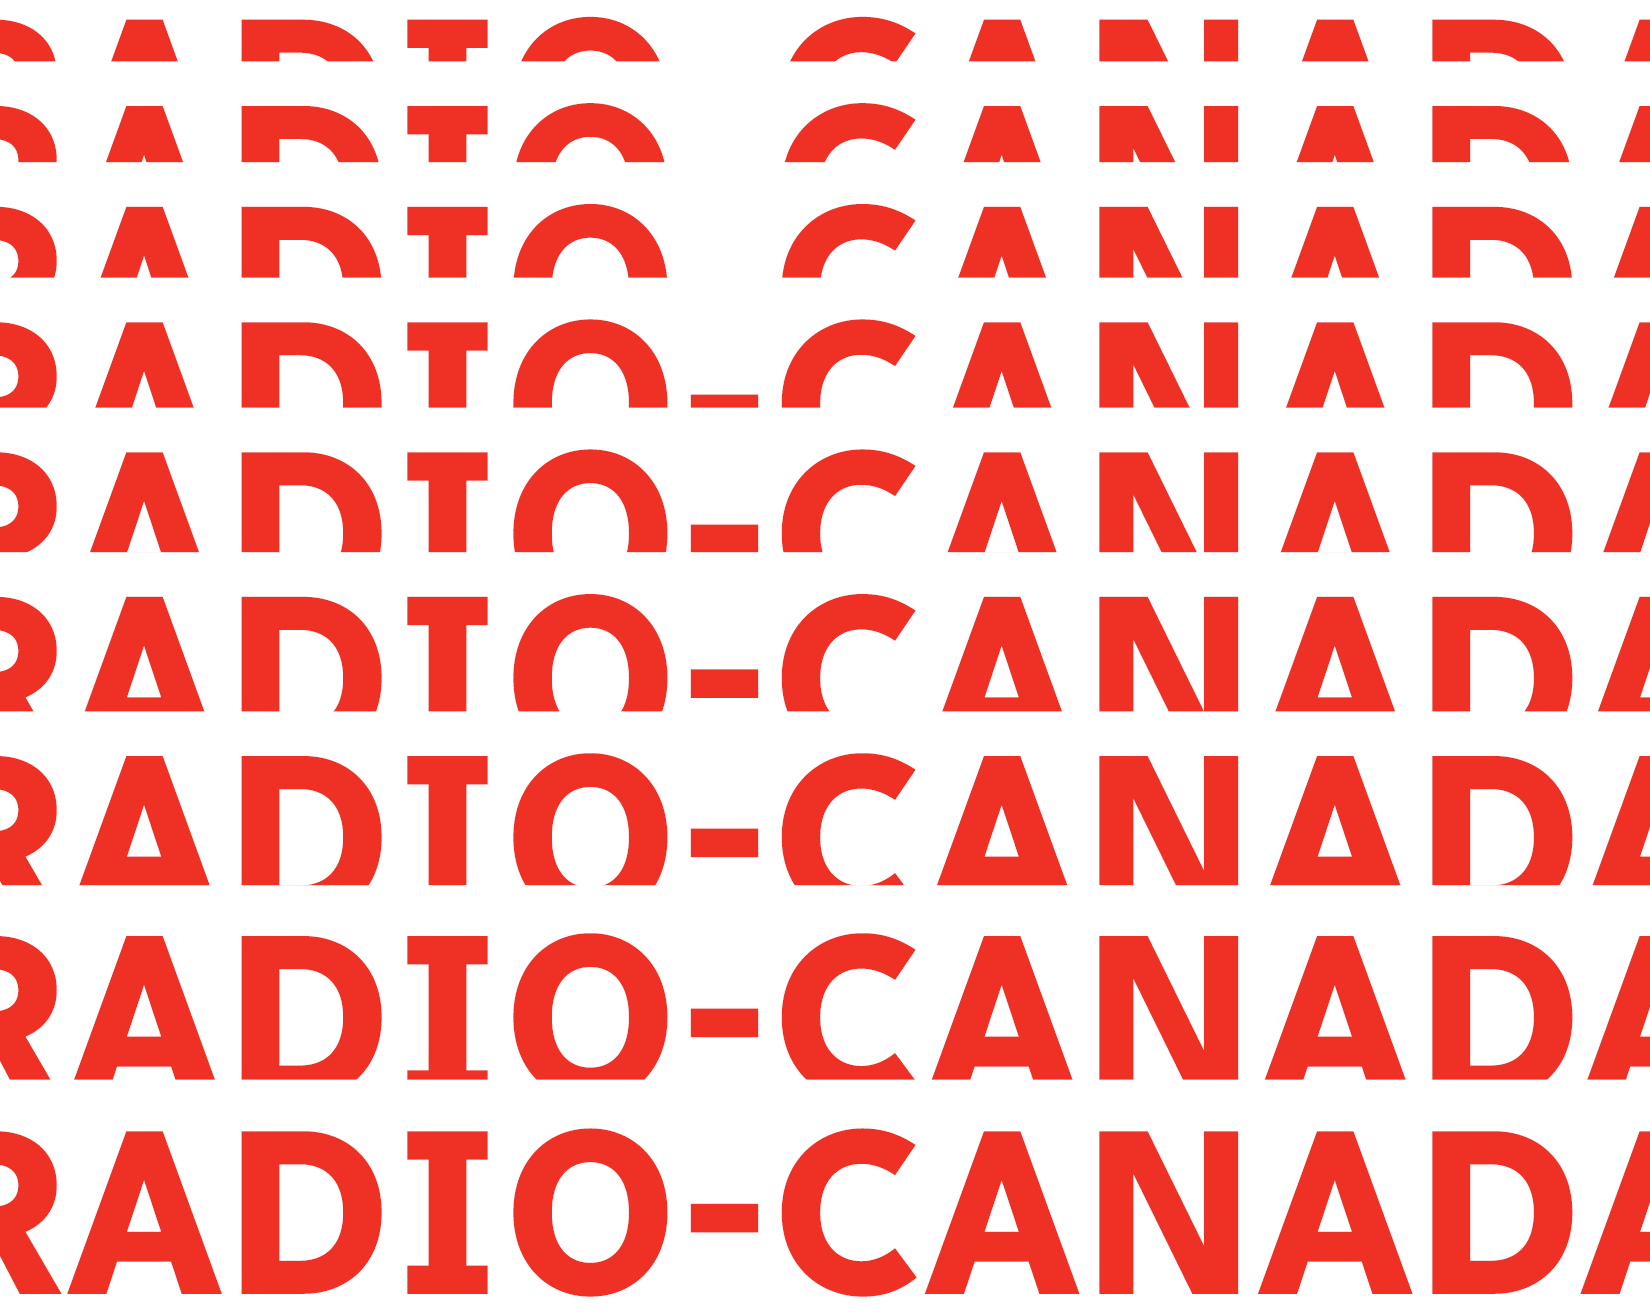 Radio-Canada_Specimen2.png